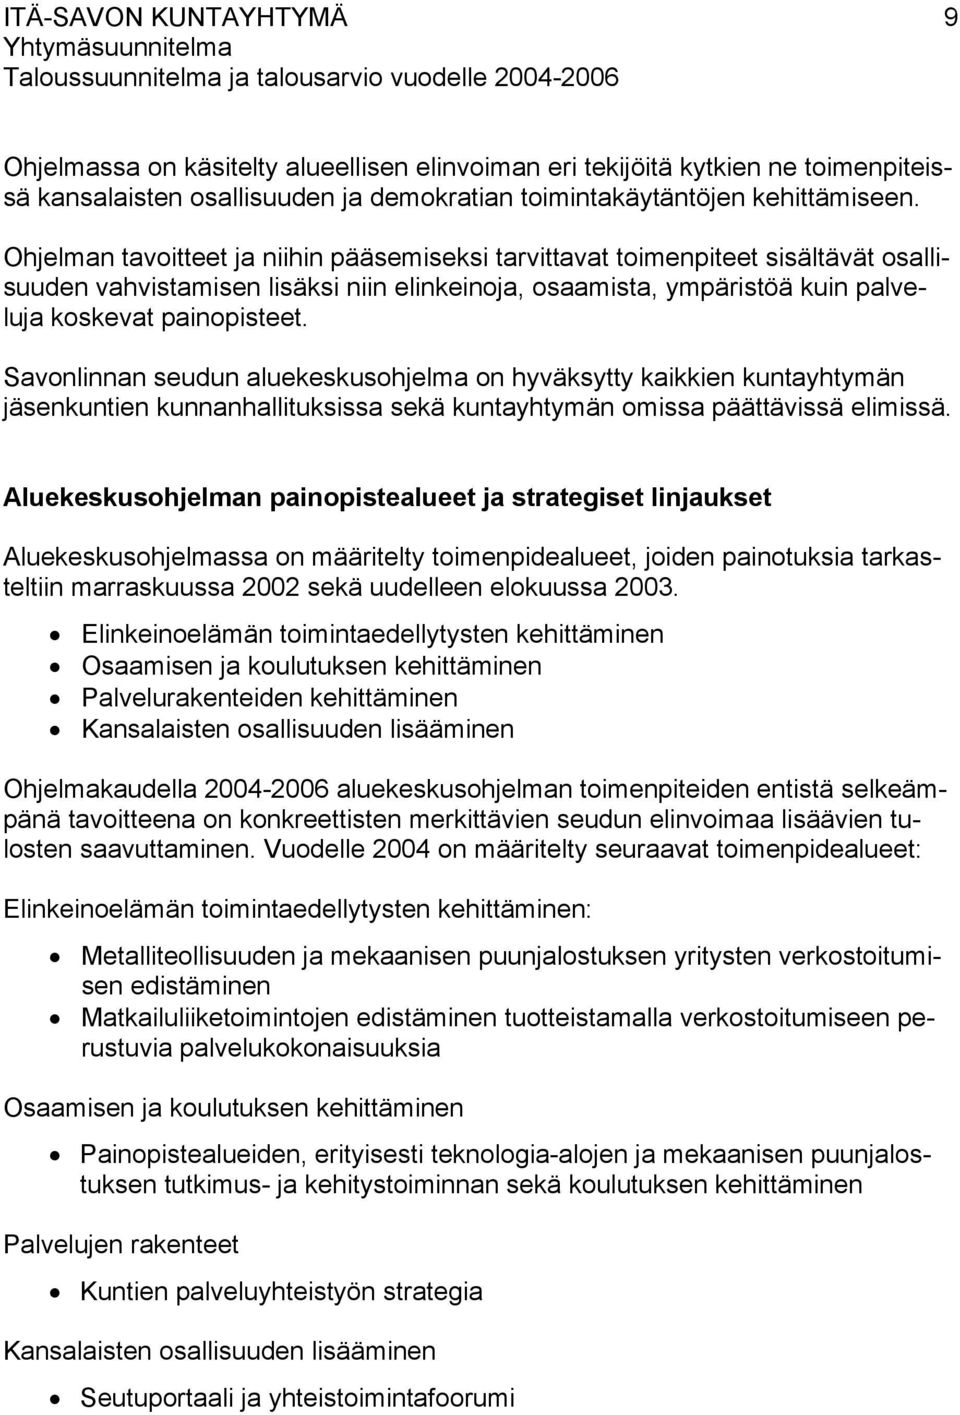 Savonlinnan seudun aluekeskusohjelma on hyväksytty kaikkien kuntayhtymän jäsenkuntien kunnanhallituksissa sekä kuntayhtymän omissa päättävissä elimissä.